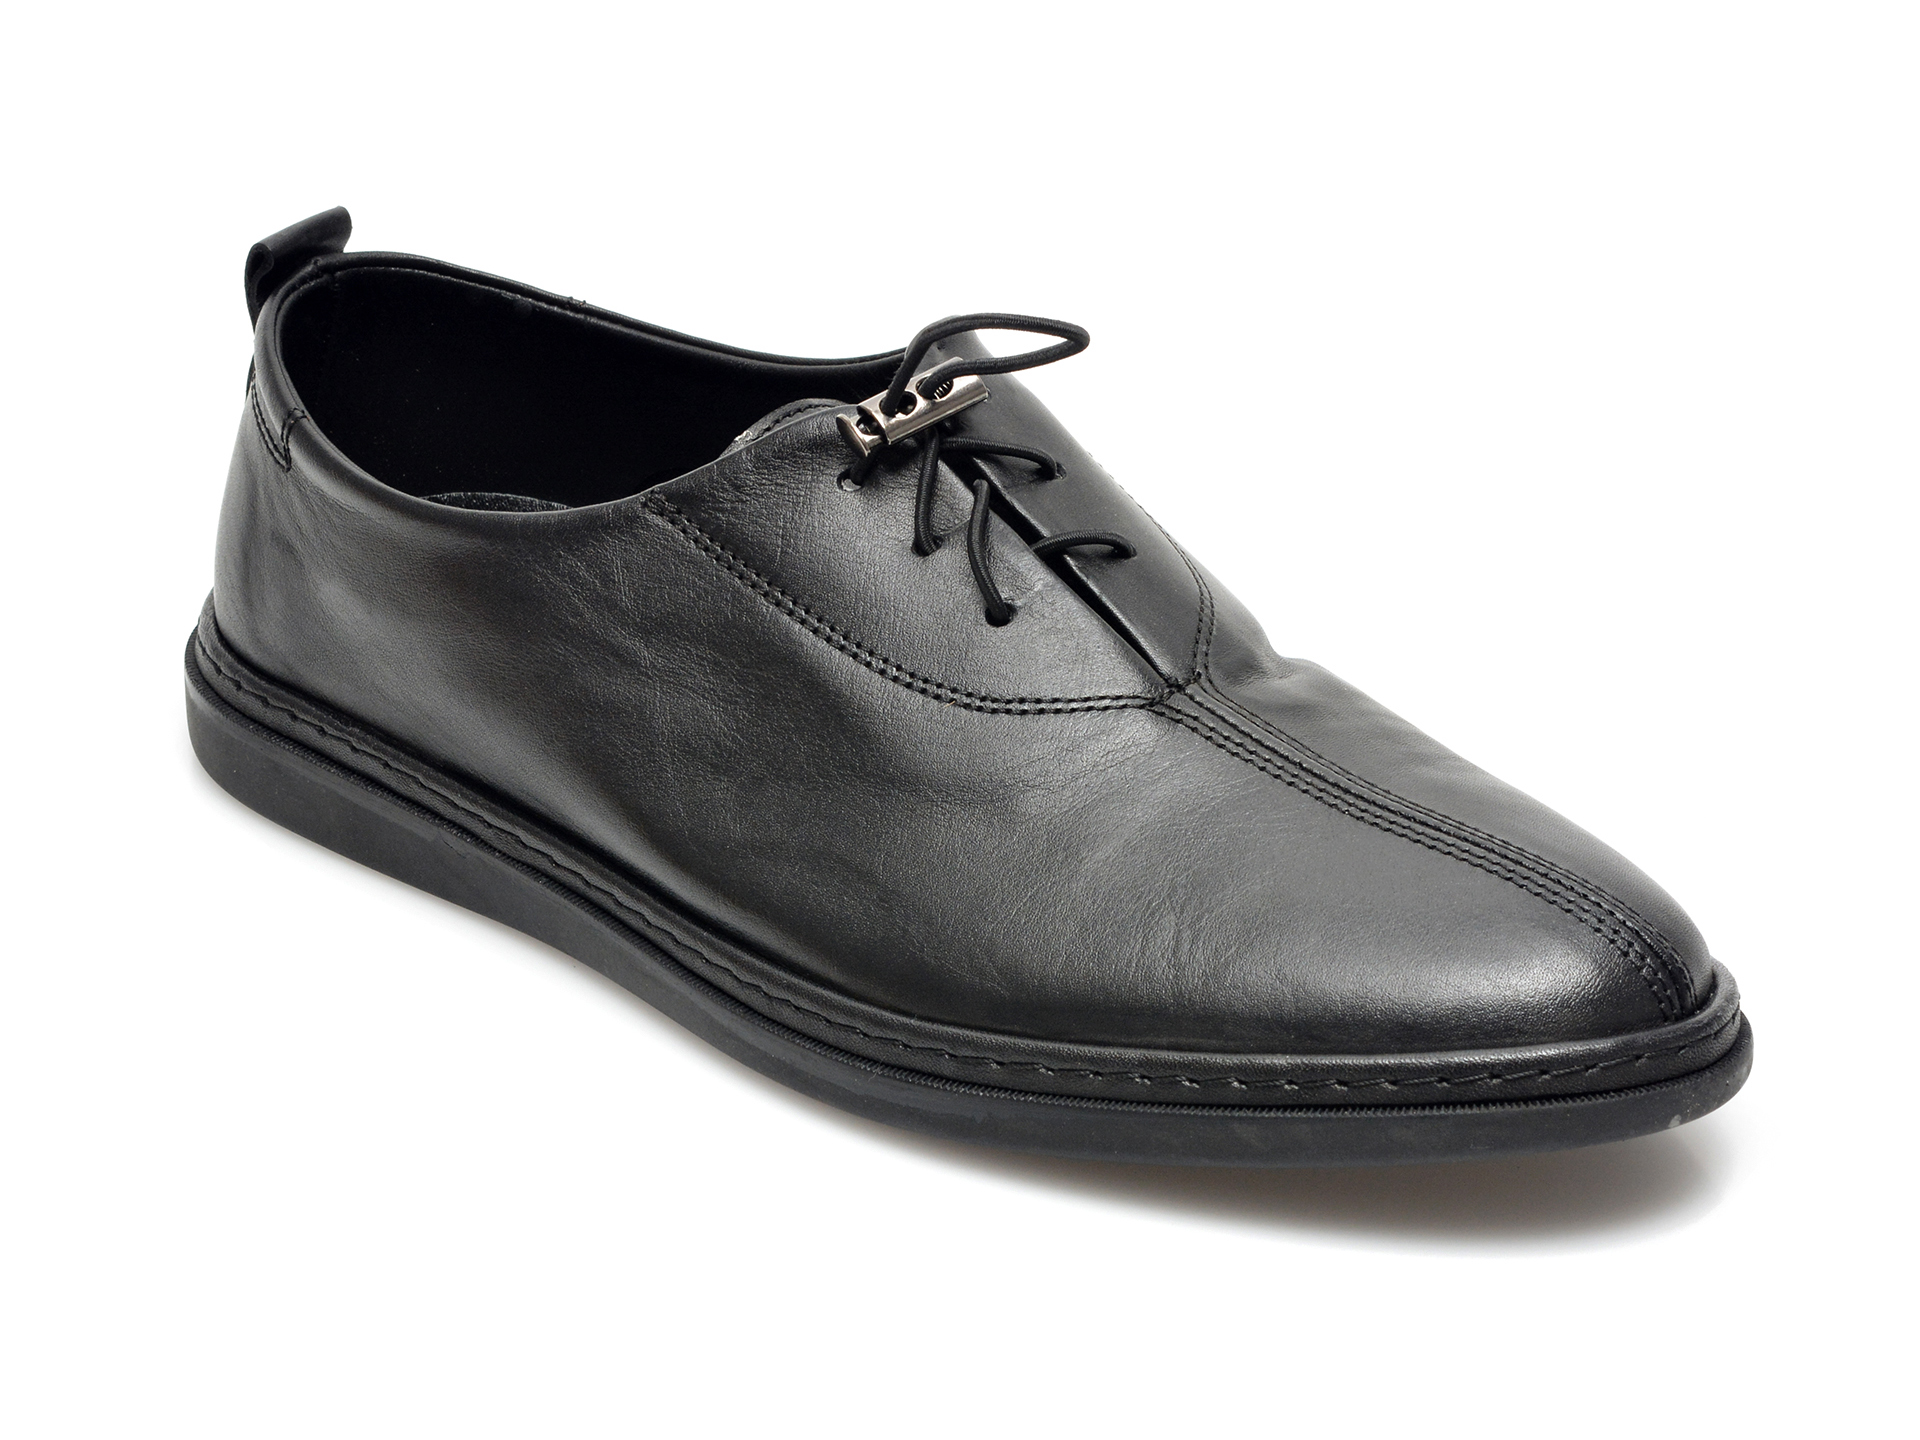 Pantofi OTTER negri, M5574, din piele naturala Otter poza reduceri 2021